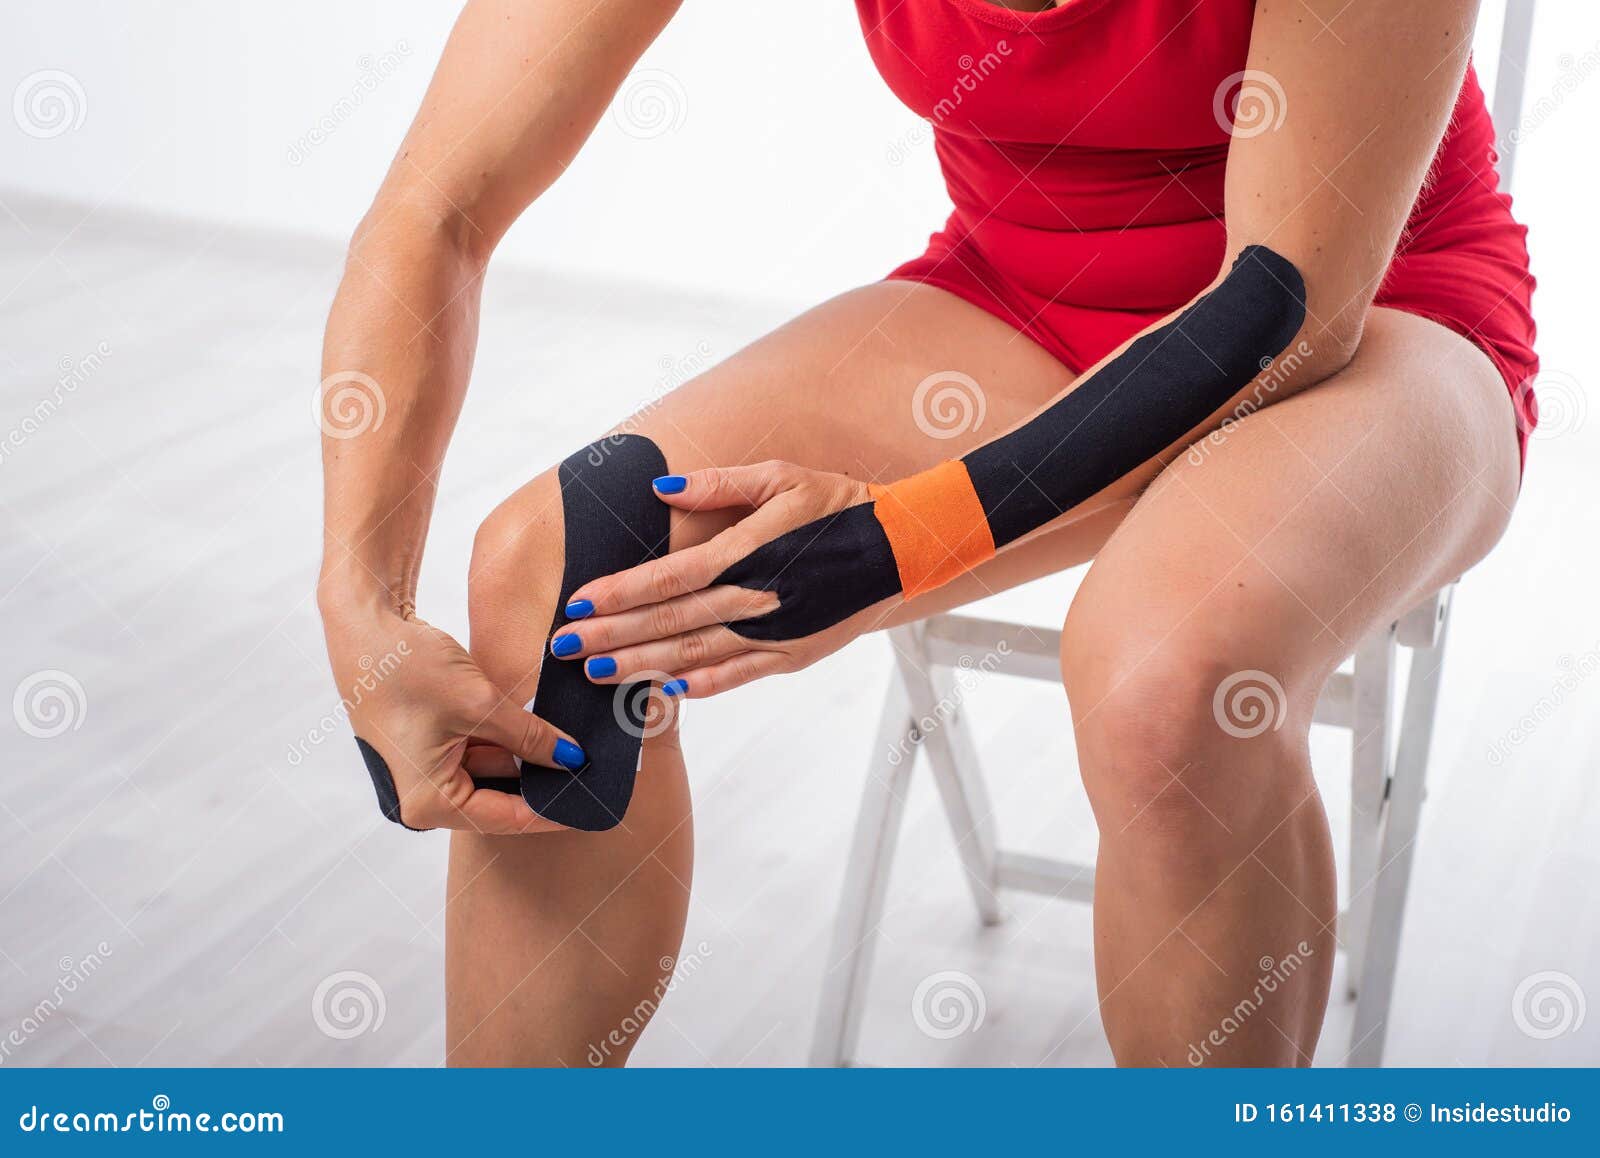 运动员在膝盖上放了运动带关节和肌腱损伤的替代治疗 运动学库存照片 图片包括有形容词 联接